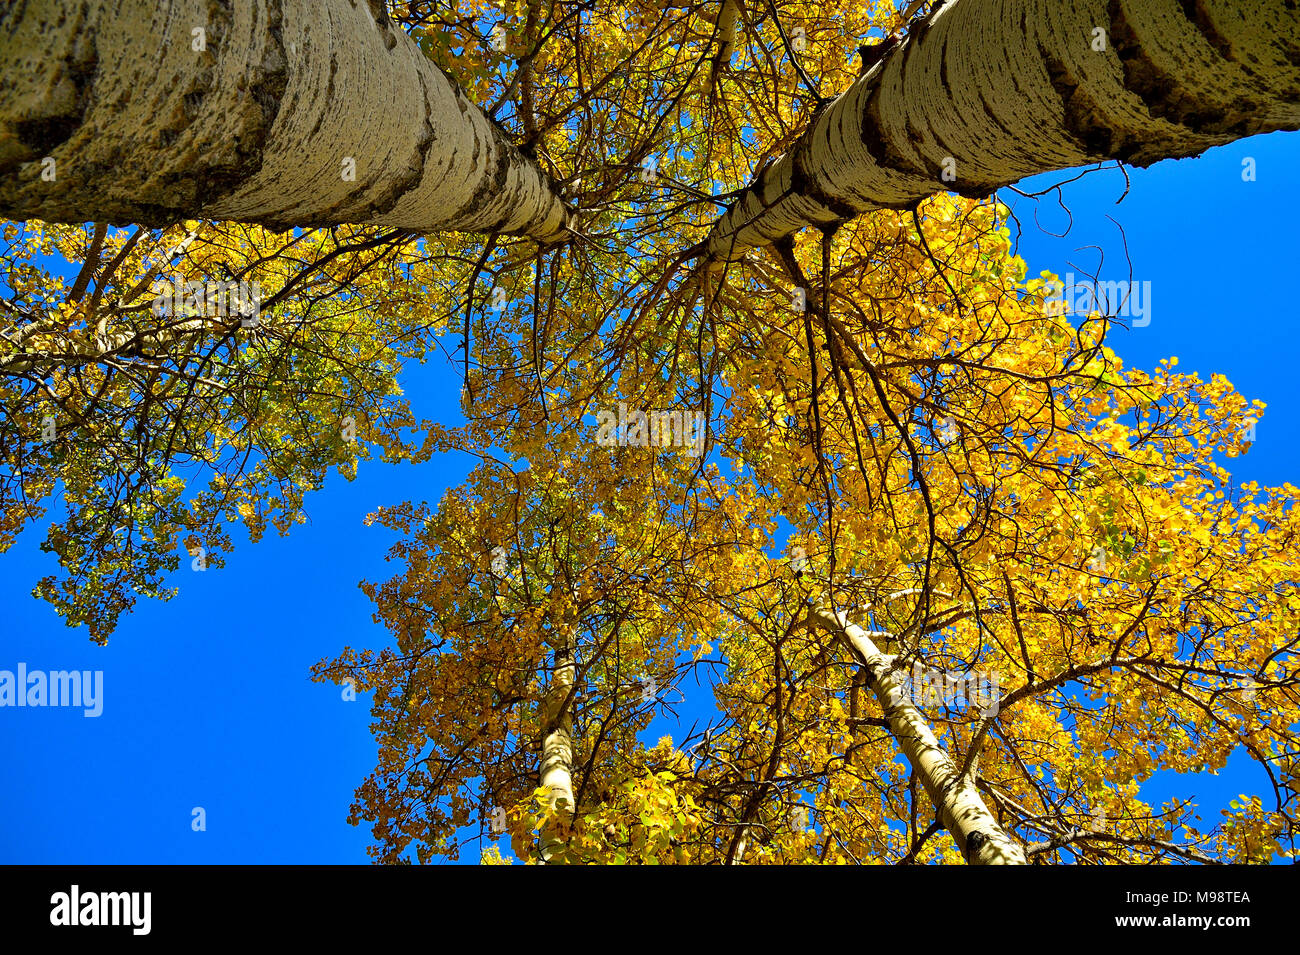 Cerca fino alle cime di alti alberi di Aspen con bright foglie gialle contro un cielo azzurro nelle zone rurali di Alberta in Canada. Foto Stock